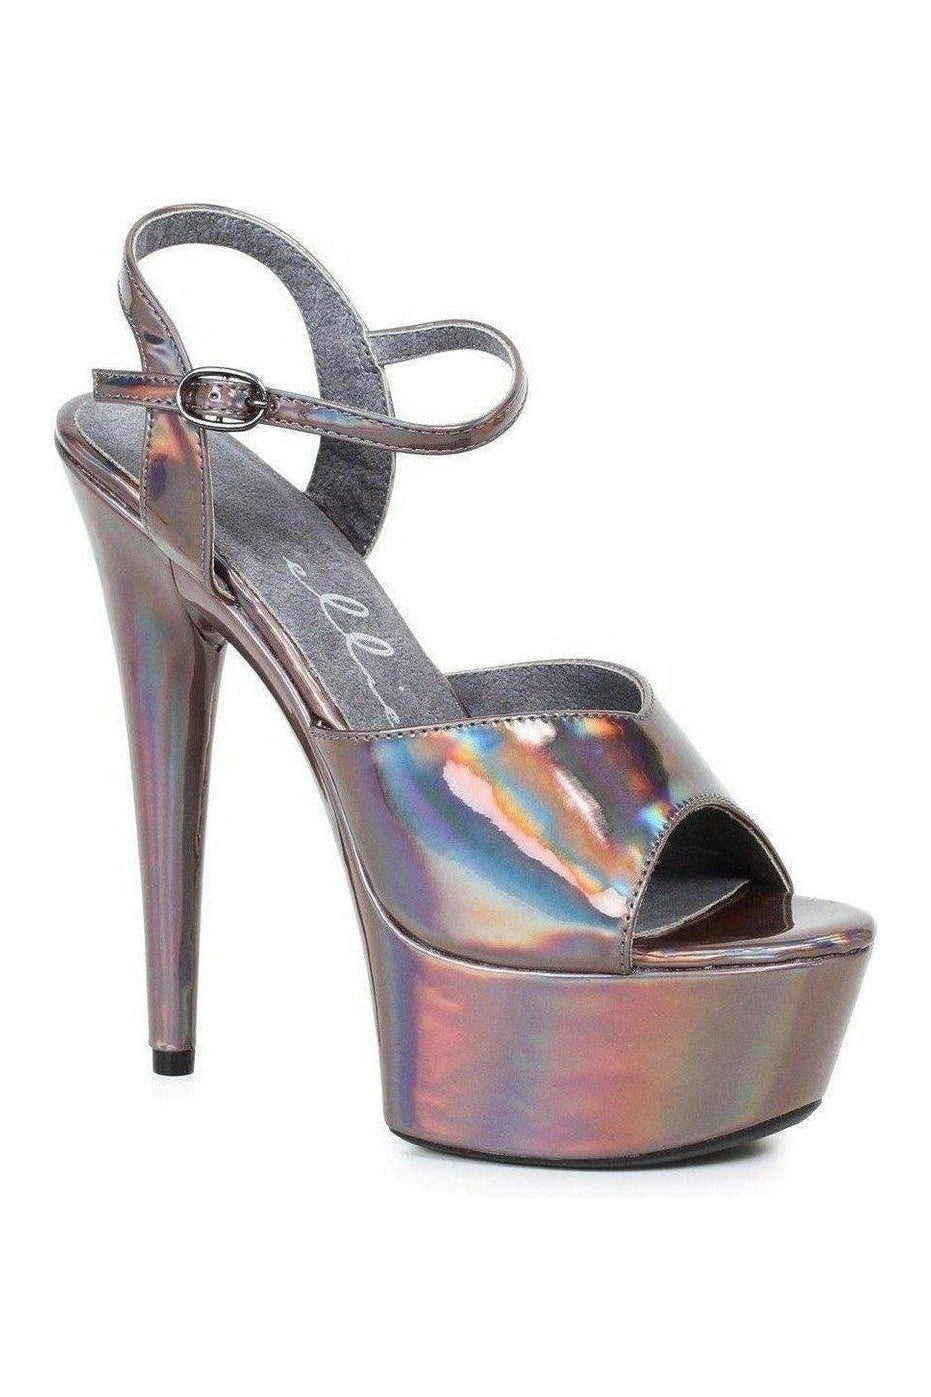 609-LOLA Platform Sandal | Pewter Faux Leather-Ellie Shoes-SEXYSHOES.COM